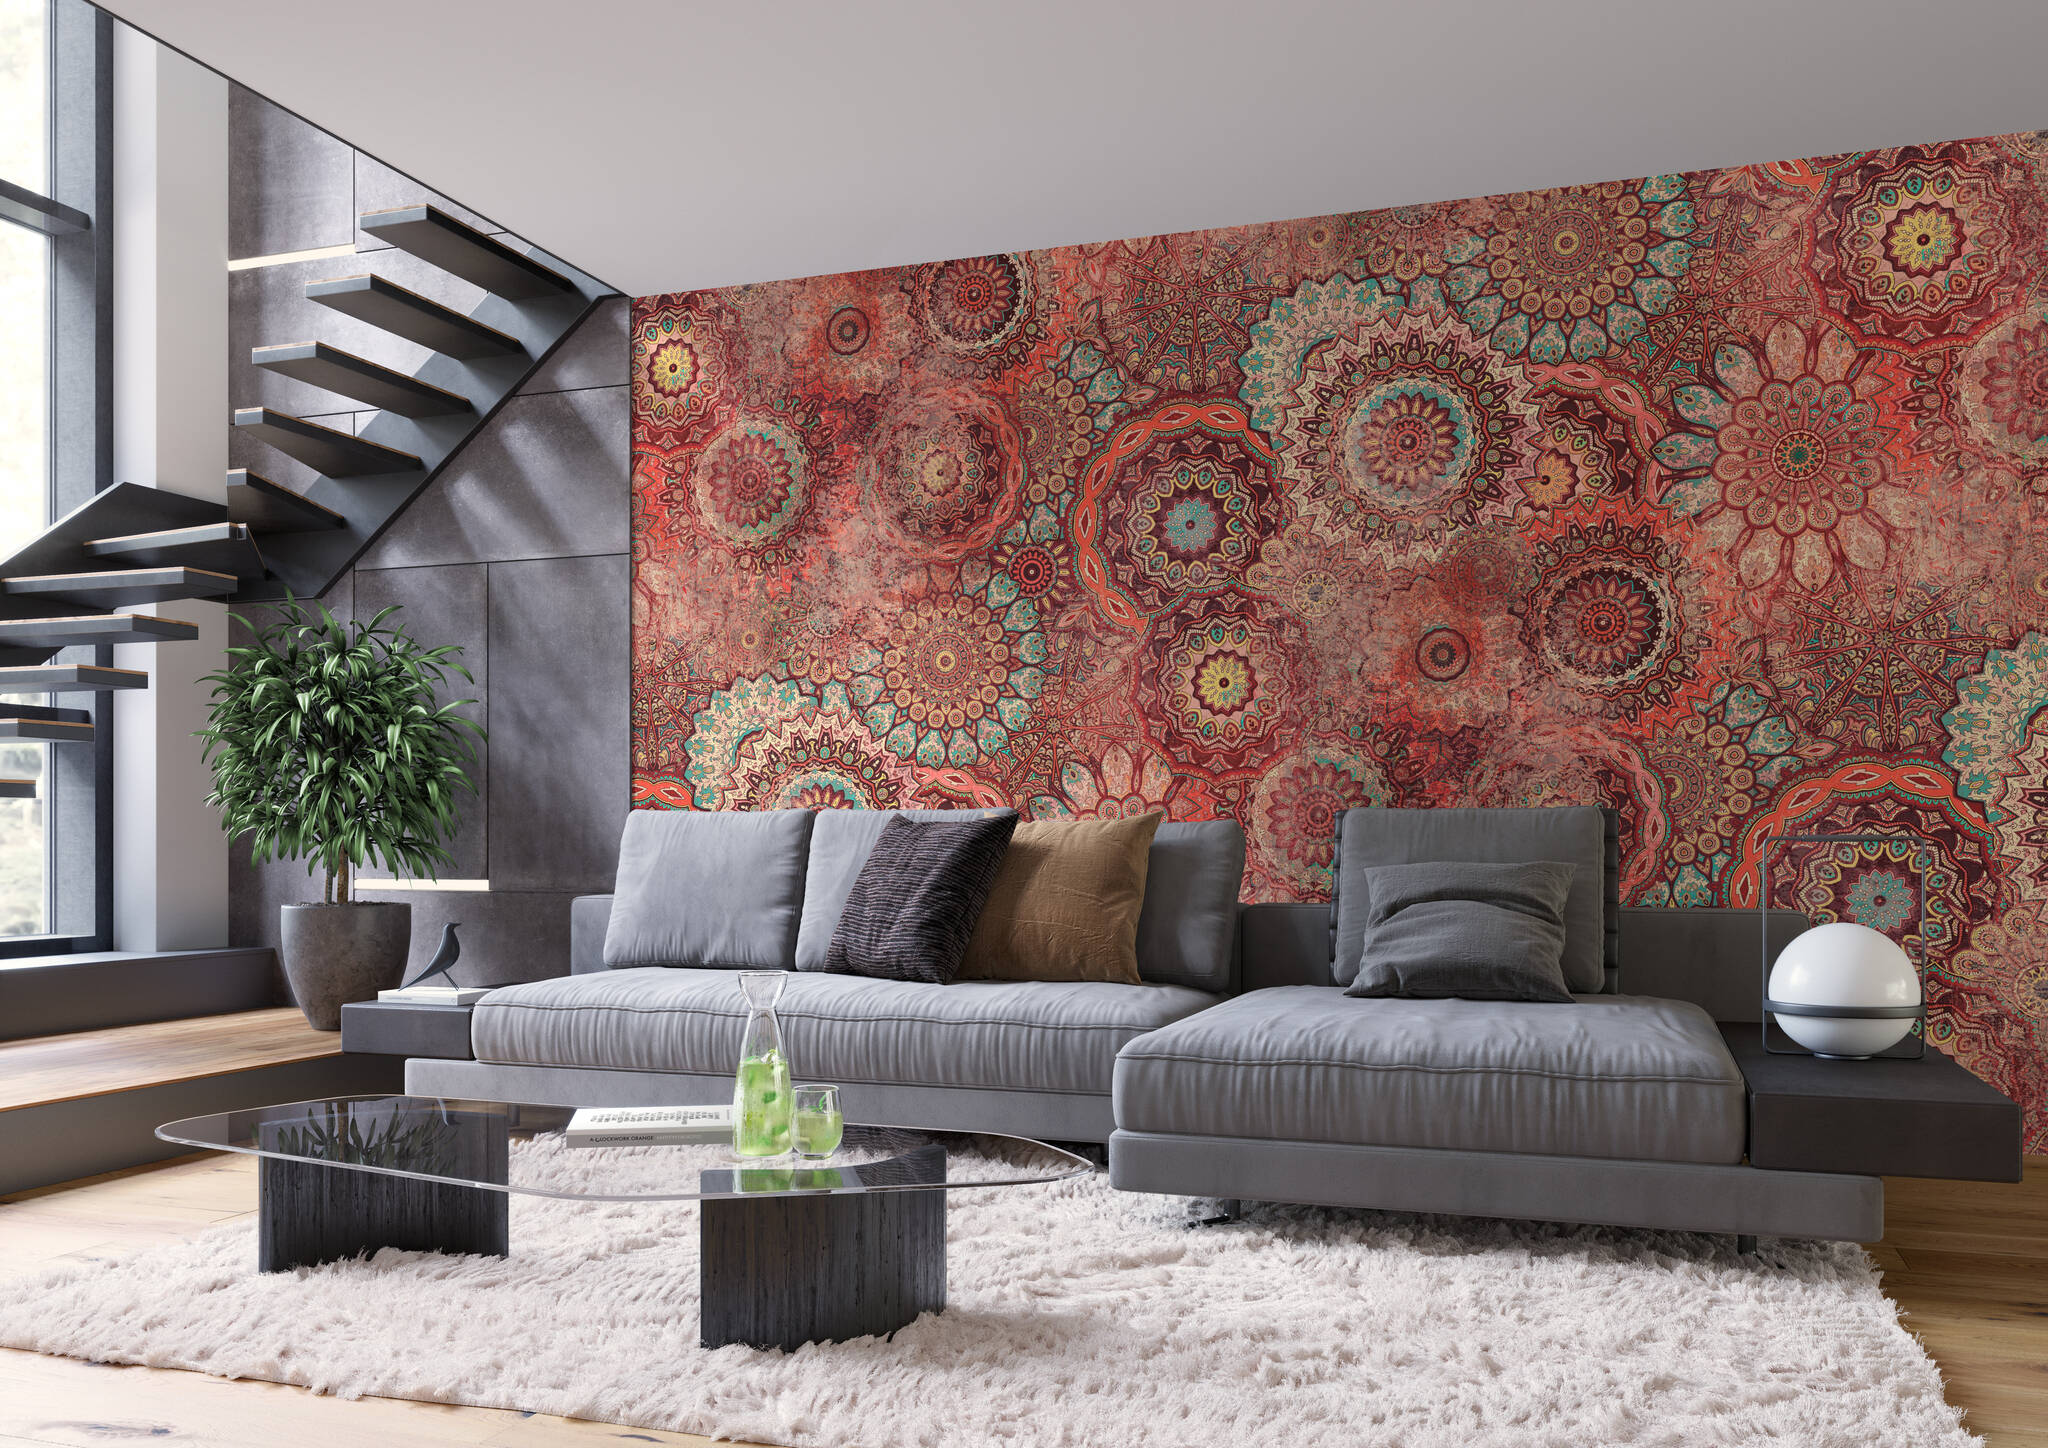 Wohnzimmer mit Wandbild - Prallvolle Mandala-Sammlung in Korallrot, Hellblau und Bordeaux mit wash-out-Effekten